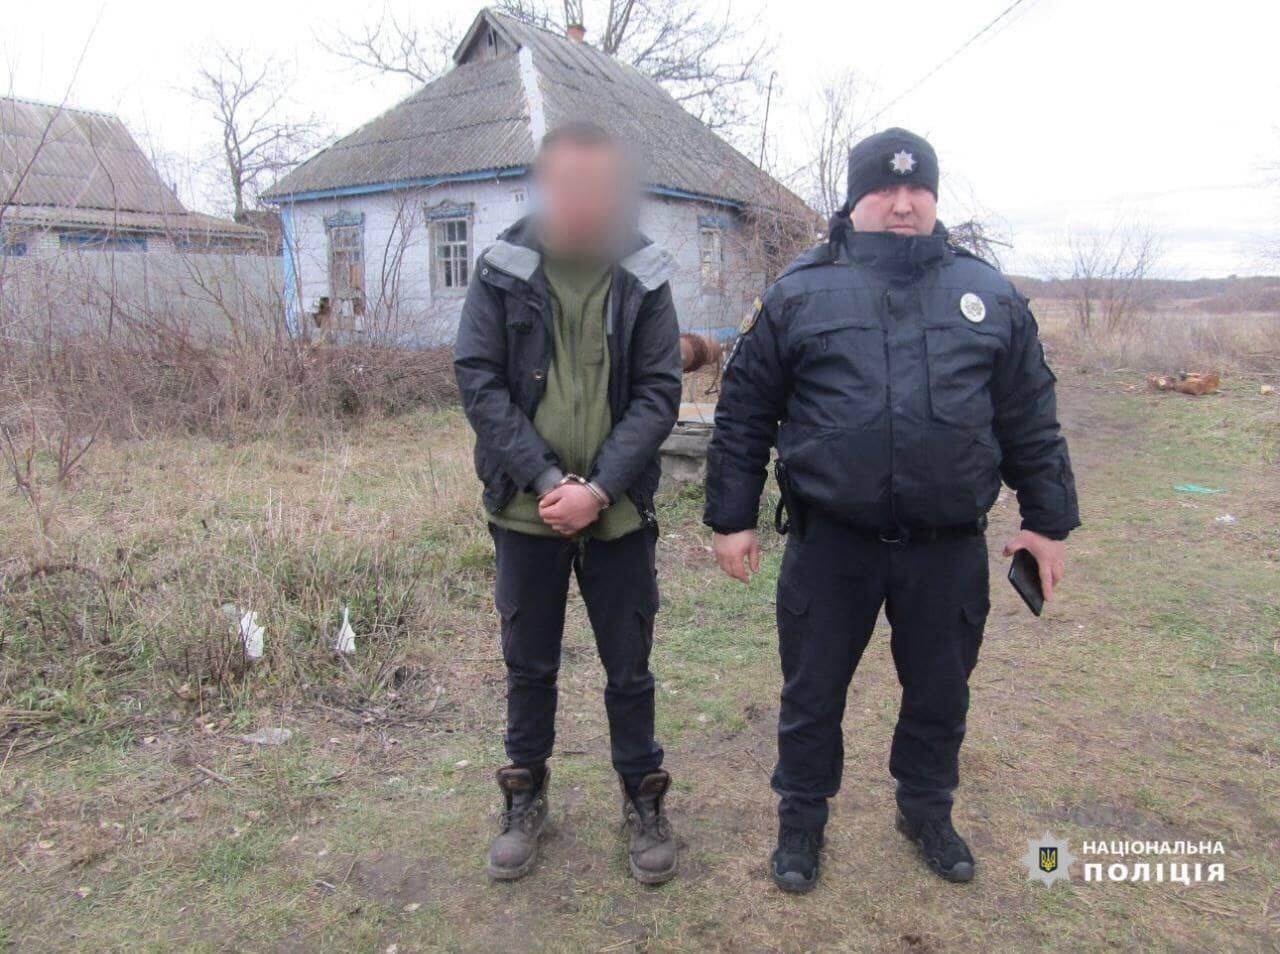 В Киевской области мужчина решил отомстить и палкой избил до смерти пенсионера. Фото